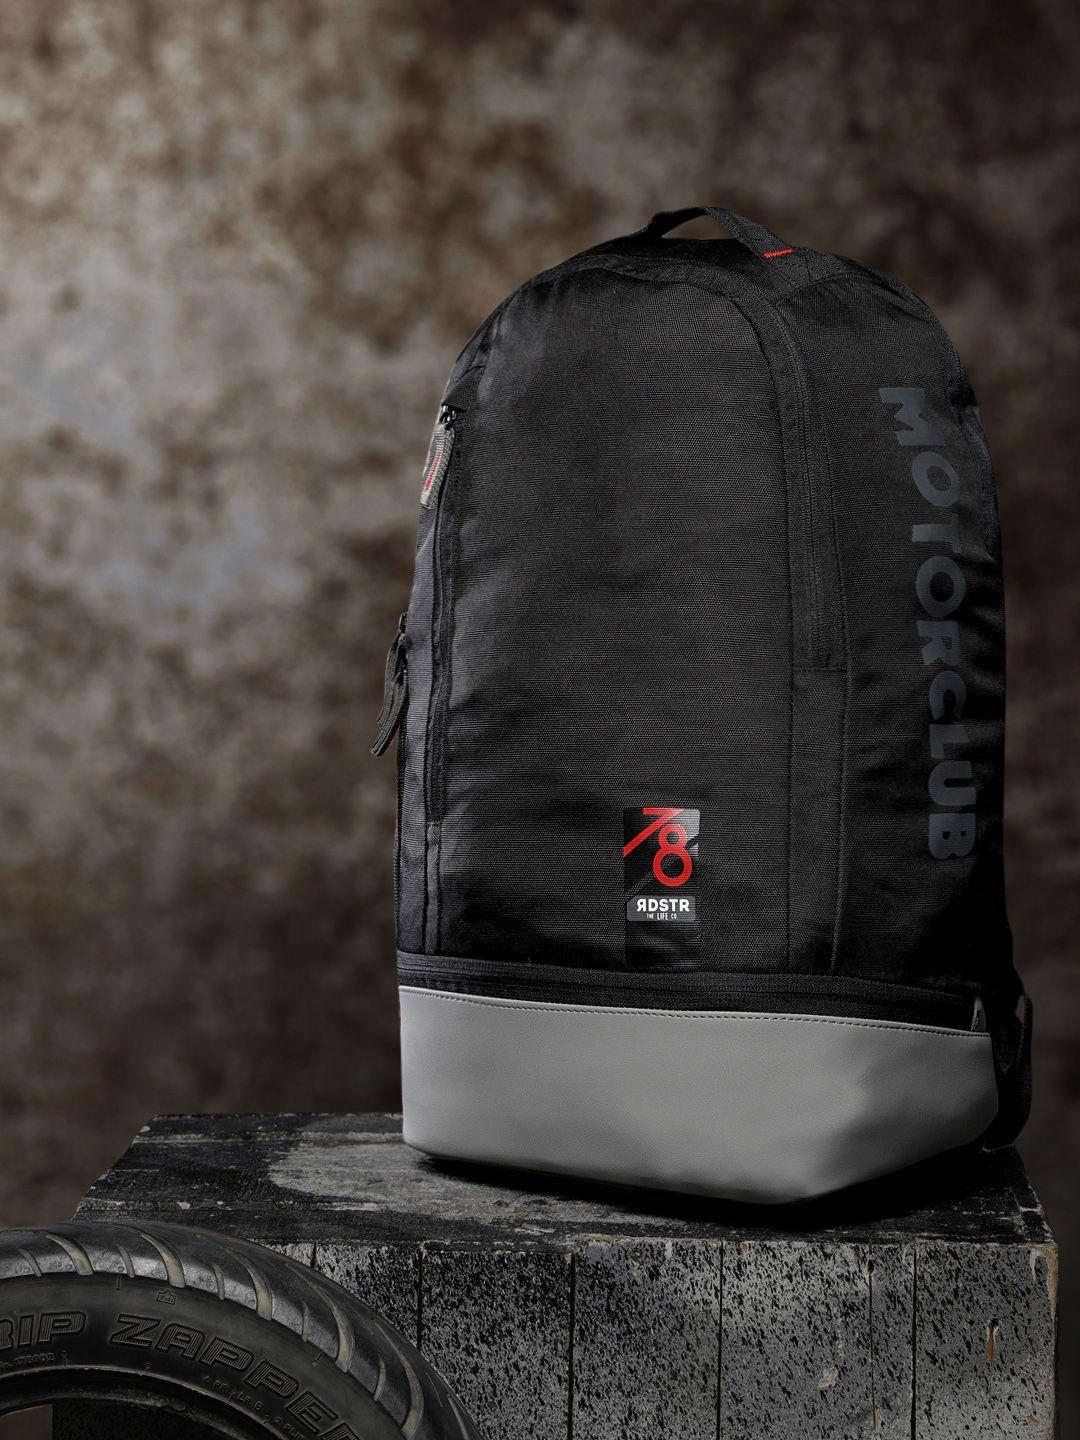 roadster unisex black & grey solid backpack